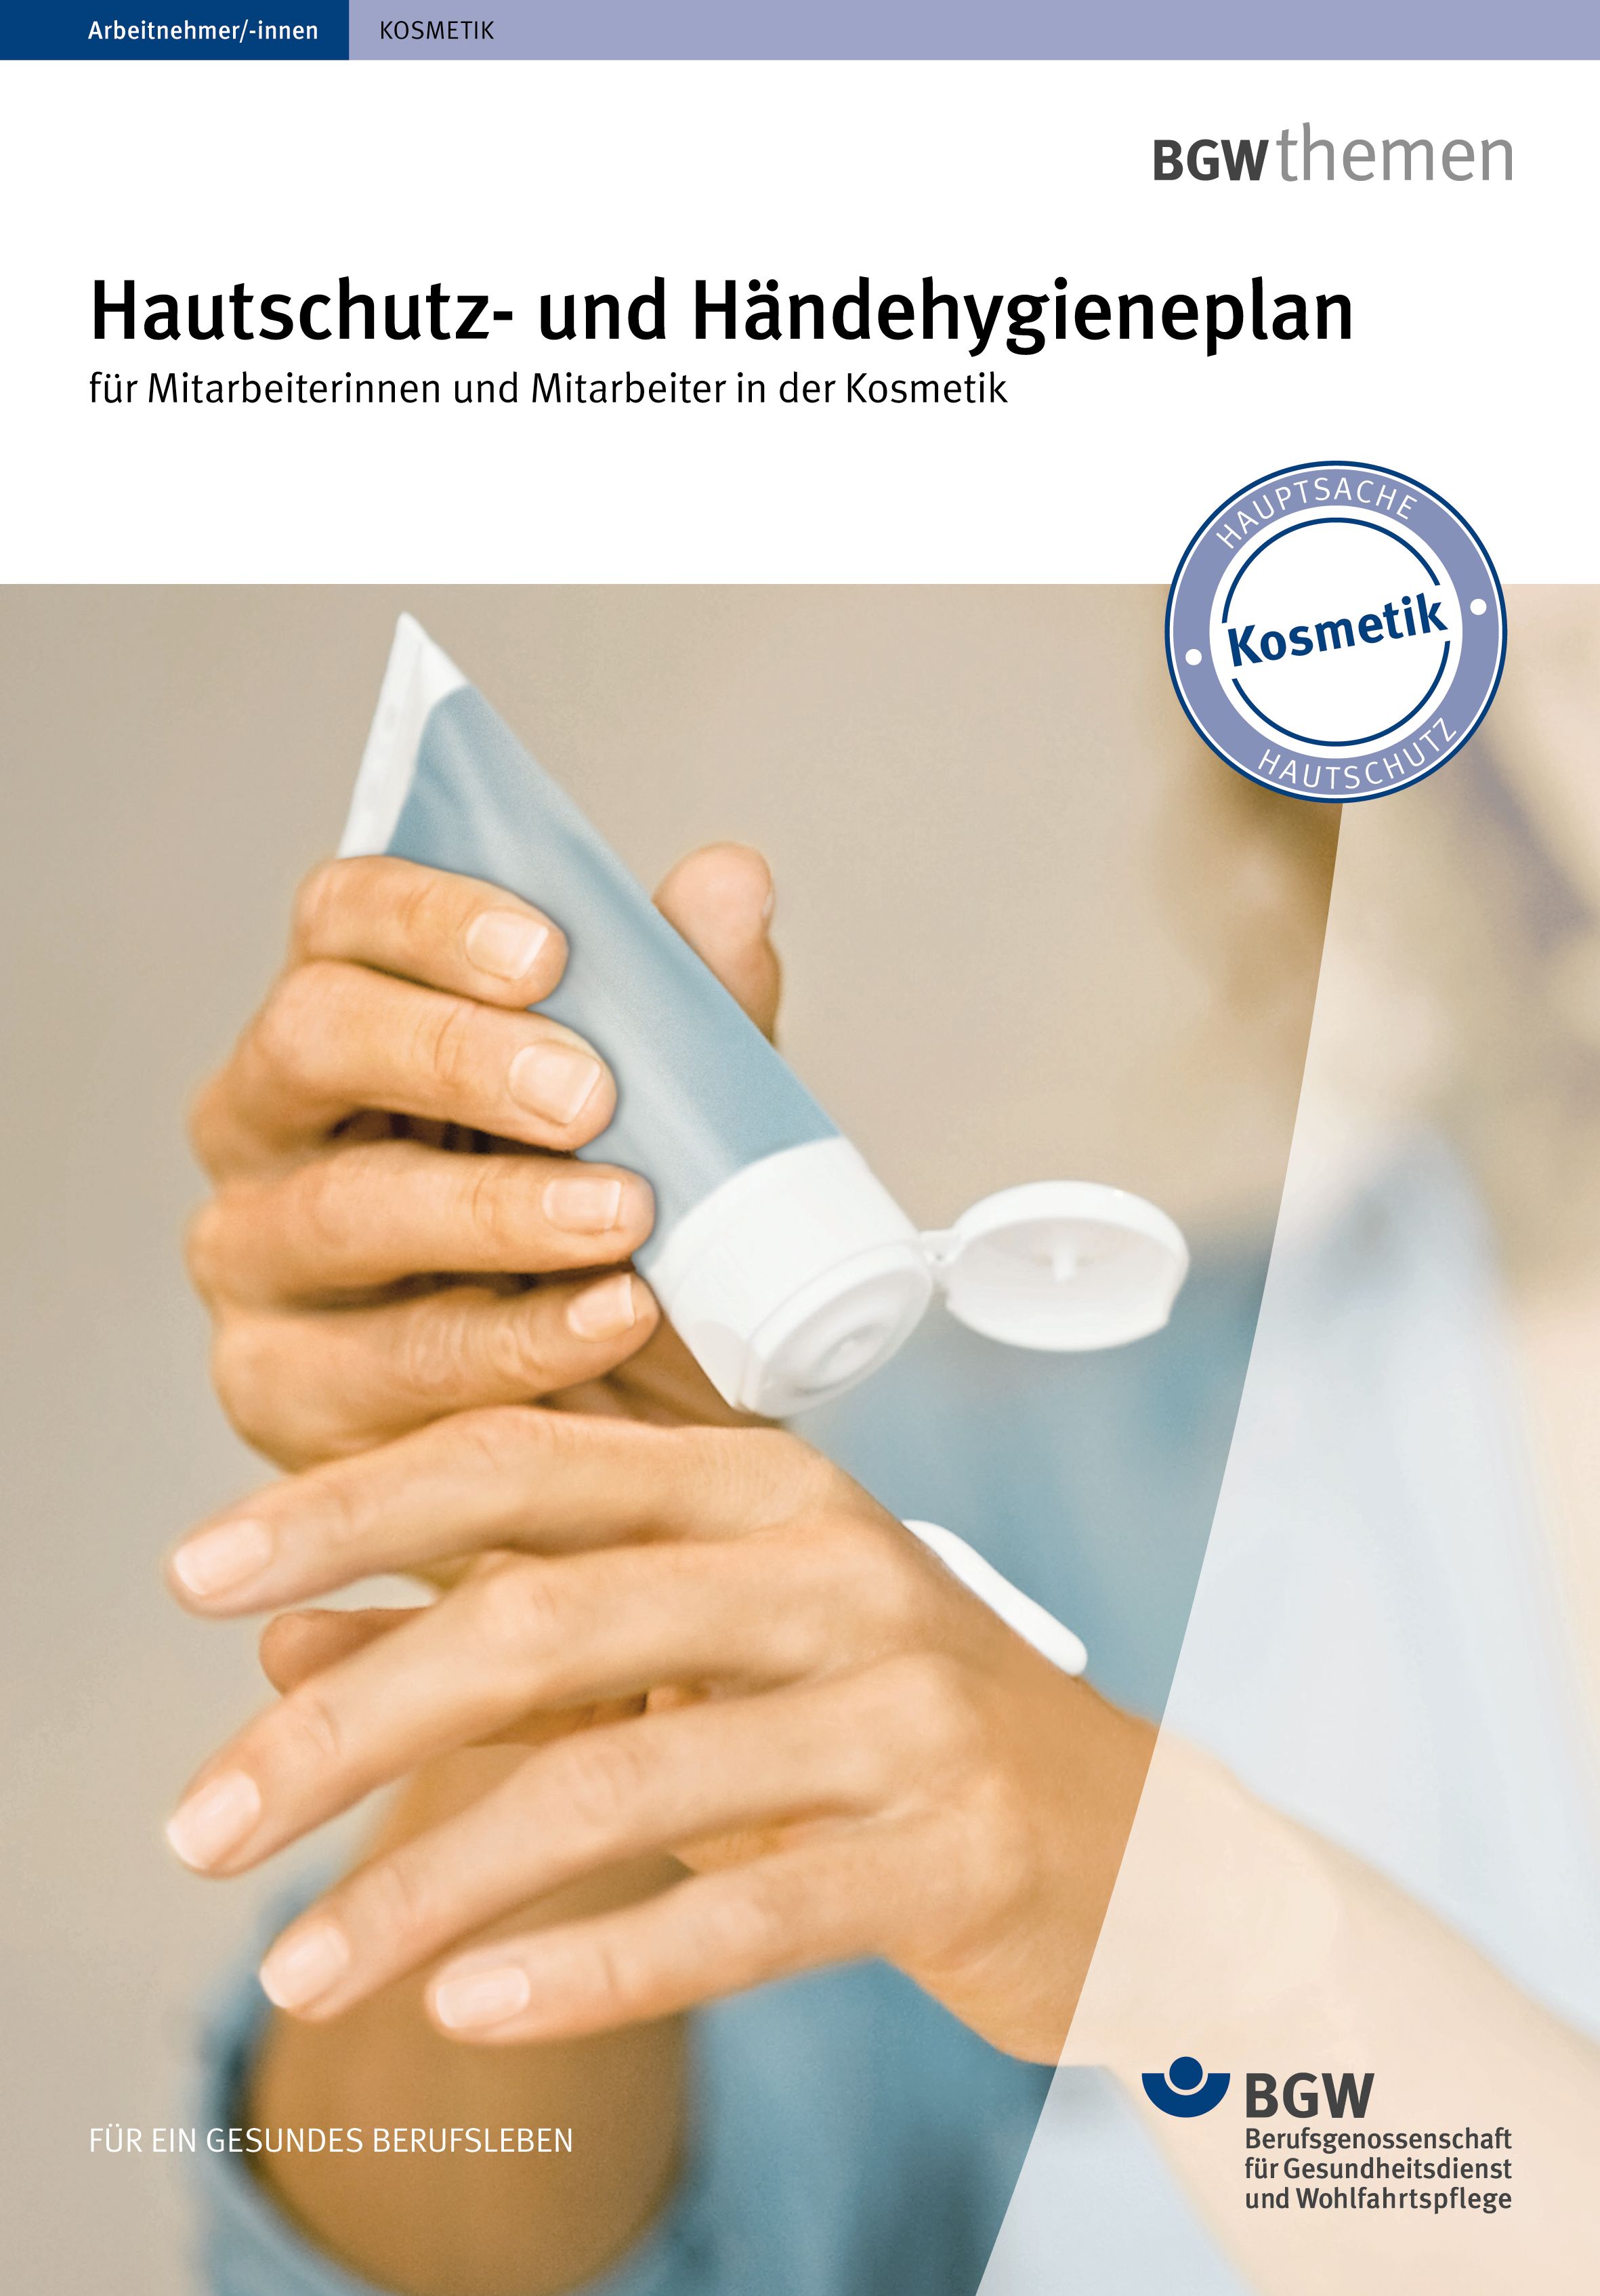 Titel: Hautschutz- und Händehygieneplan für die Kosmetik - Junge Frau appliziert sich Handcreme aus der Tube auf die Hand